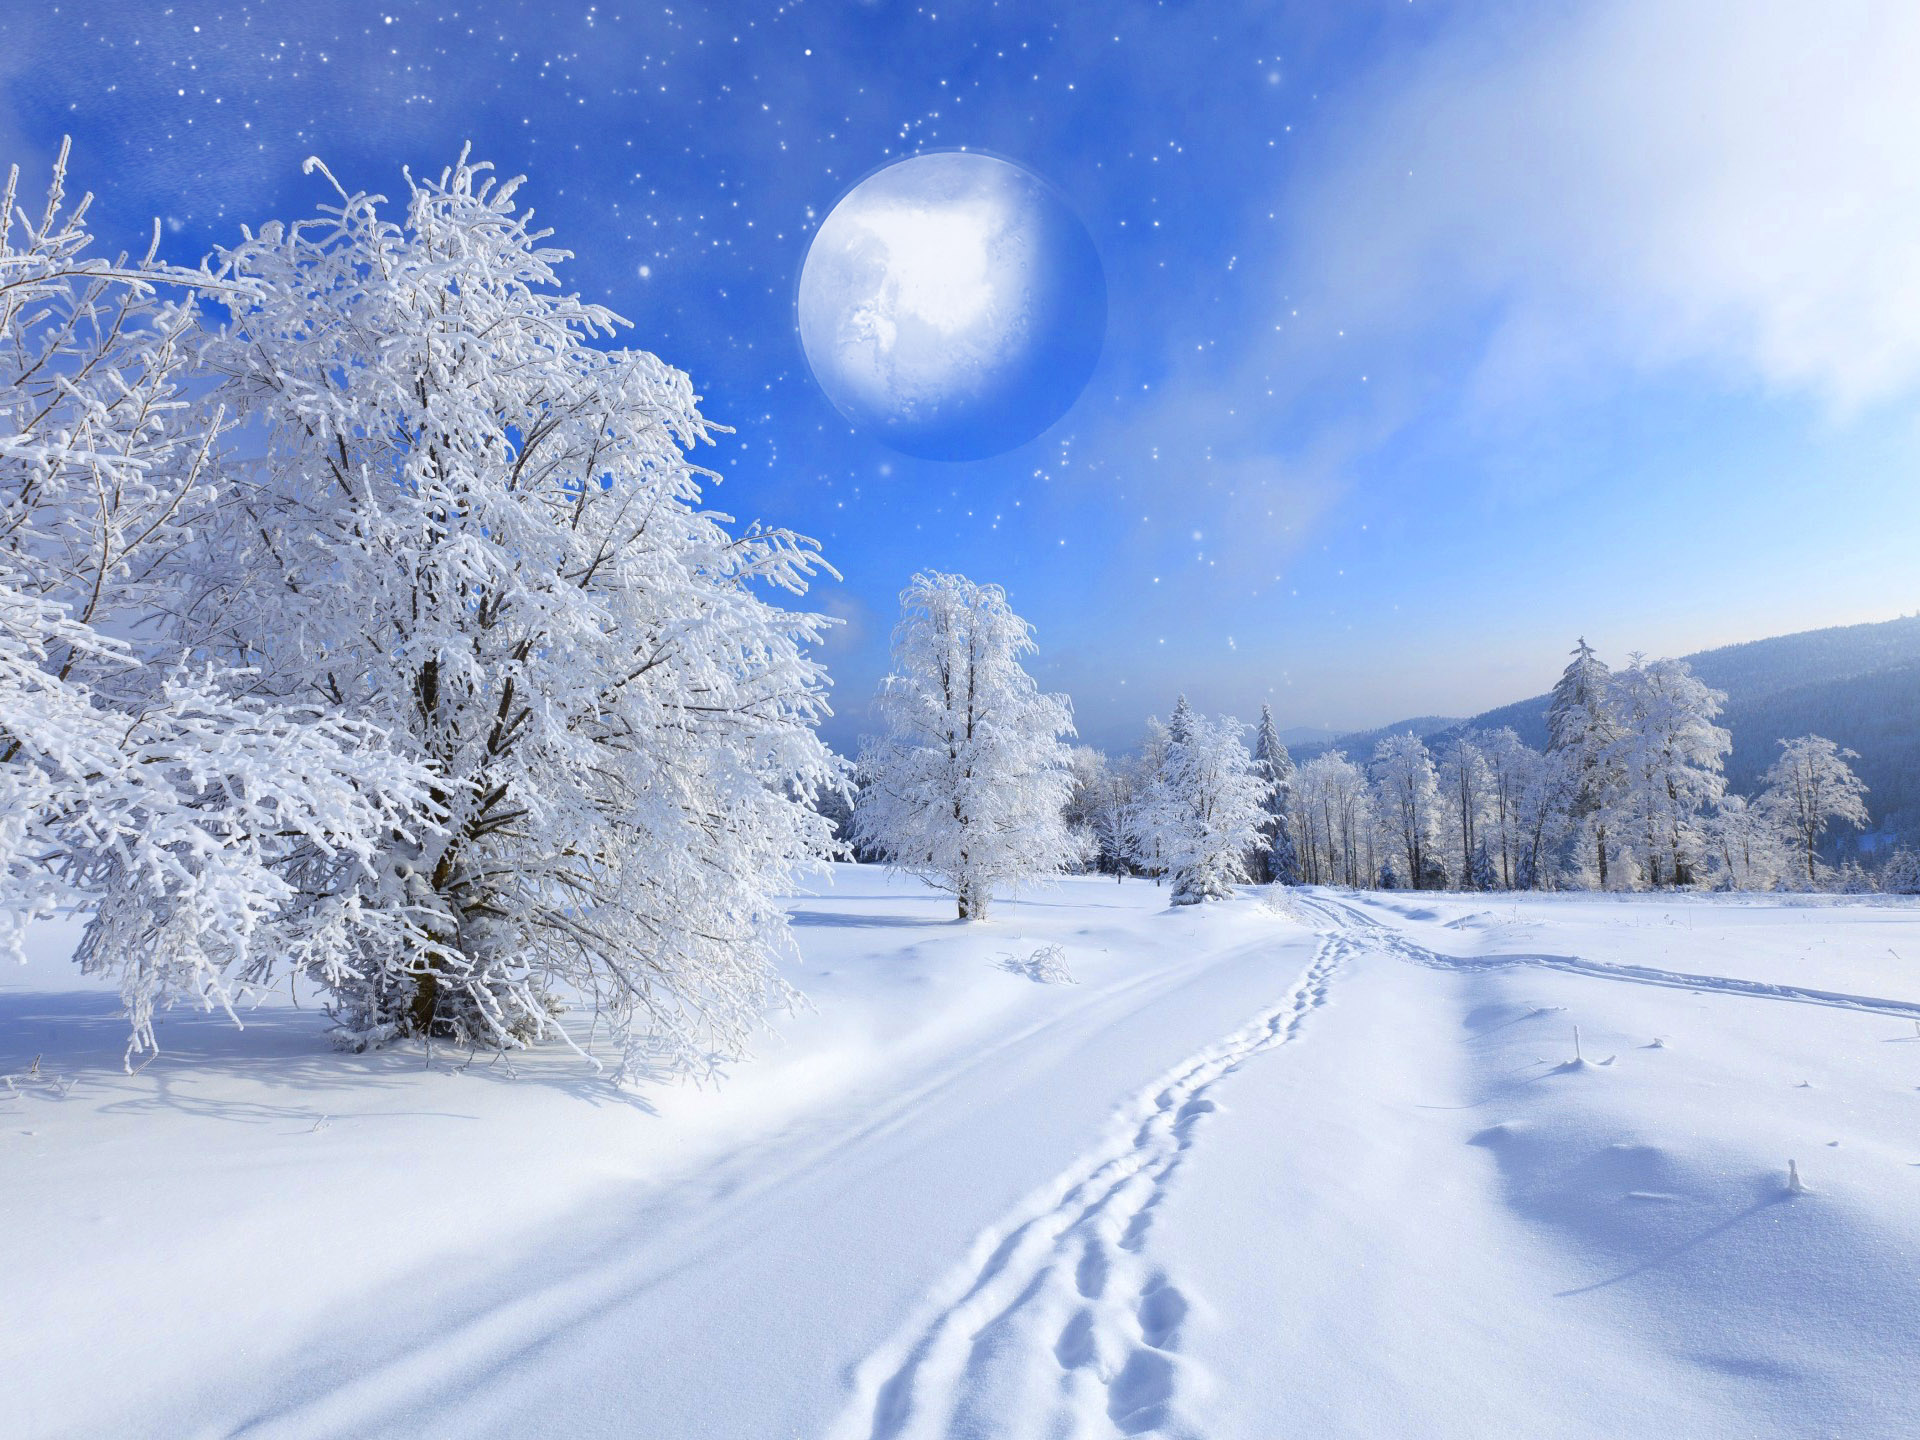 Скачать обои бесплатно Зима, Луна, Снег, Лес, Дерево, Планета, Фантастика, Ландшафт, Художественные картинка на рабочий стол ПК